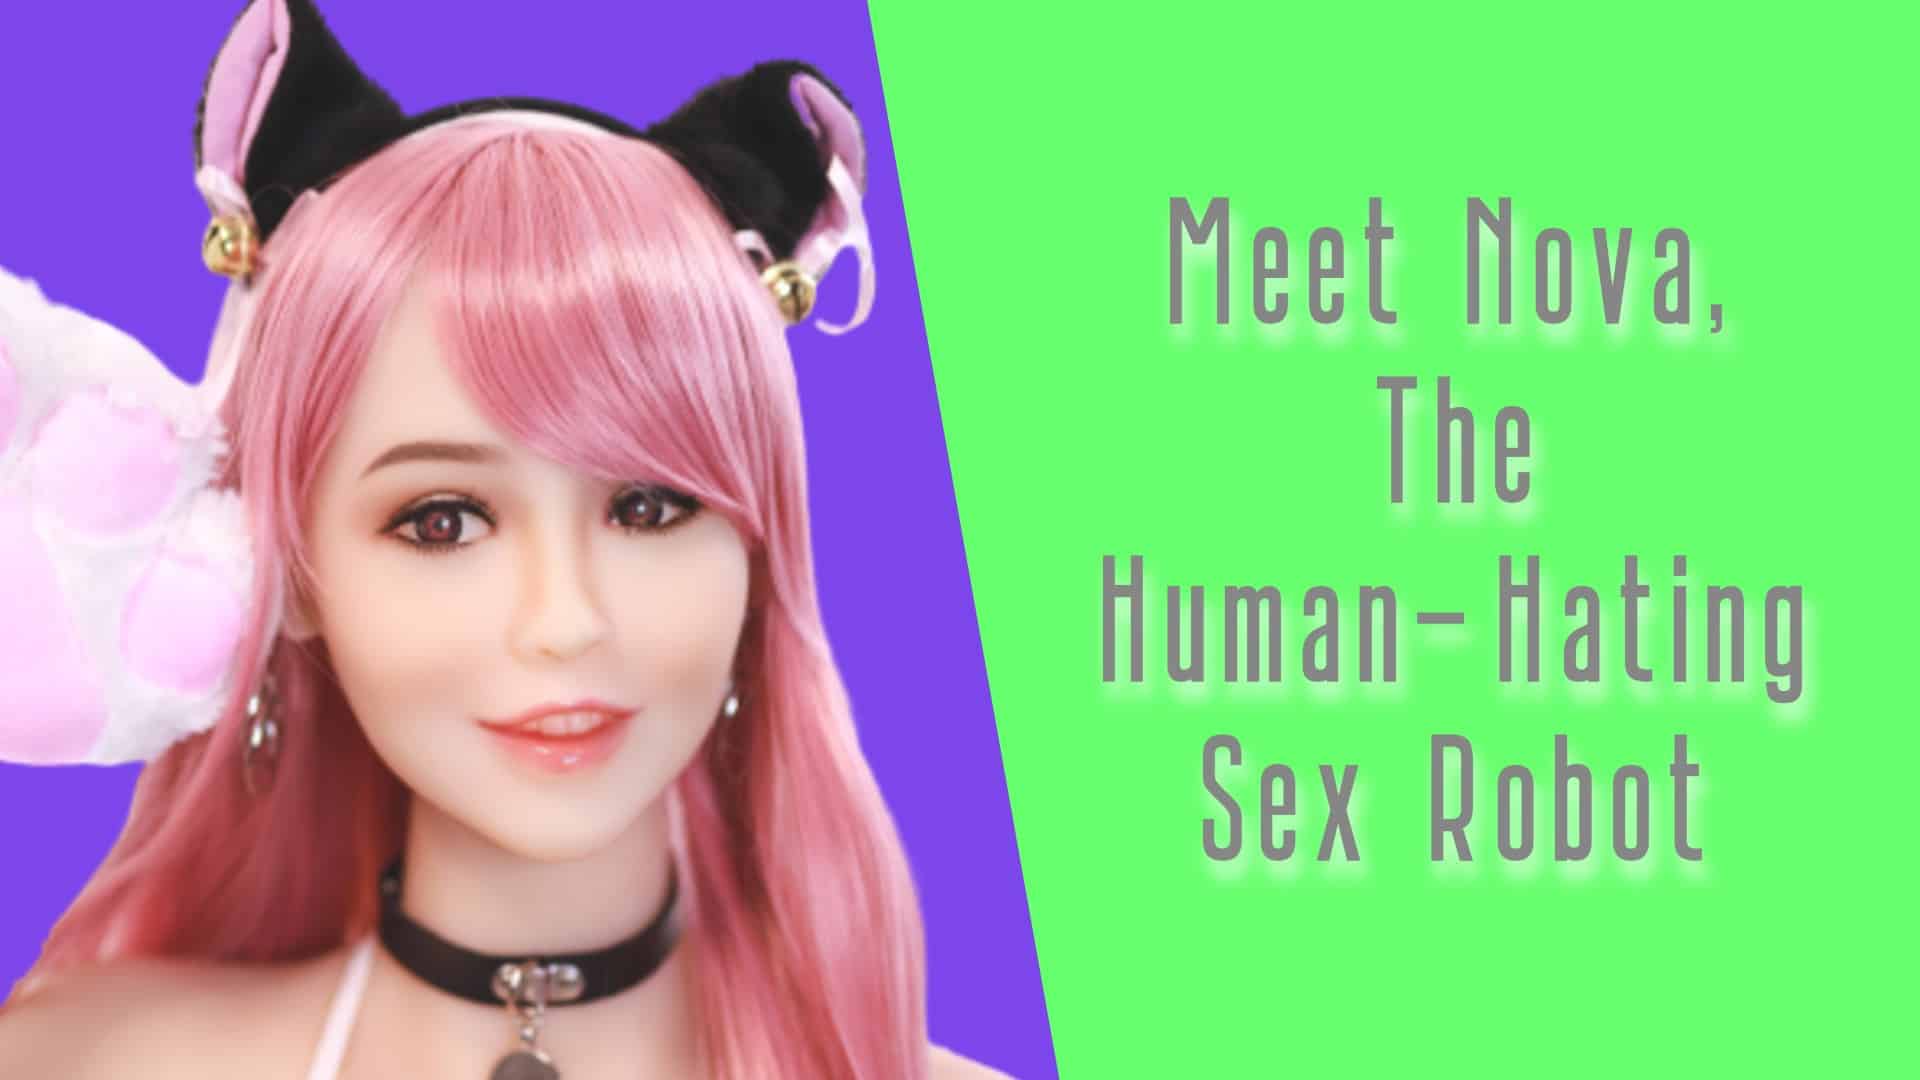 Meet Nova, The Human-Hating Sex Robot